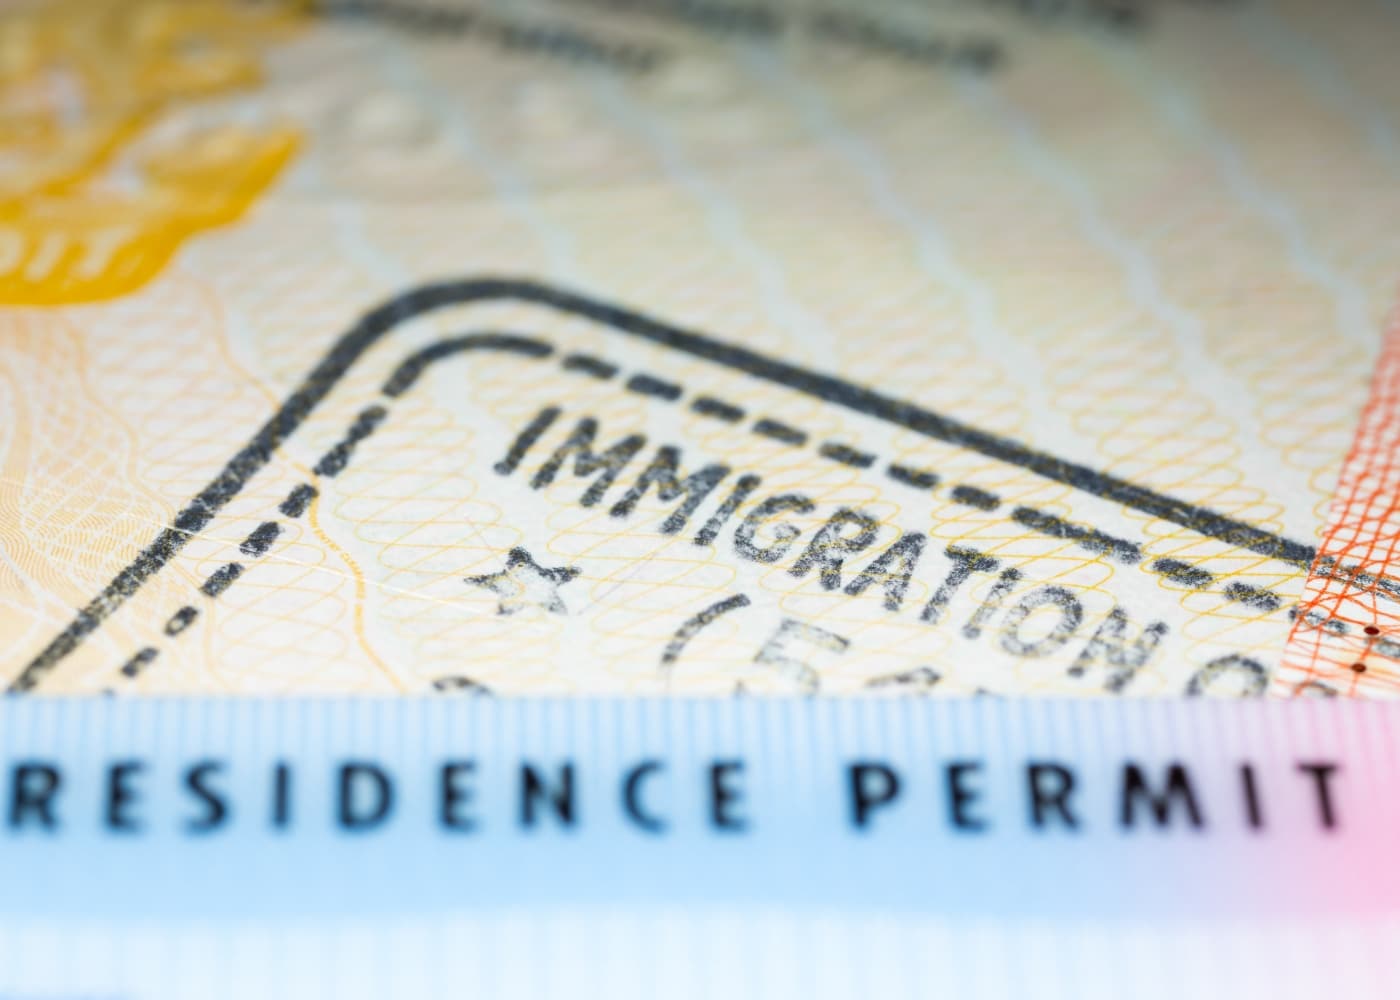 nacionalidad-e-inmigracion